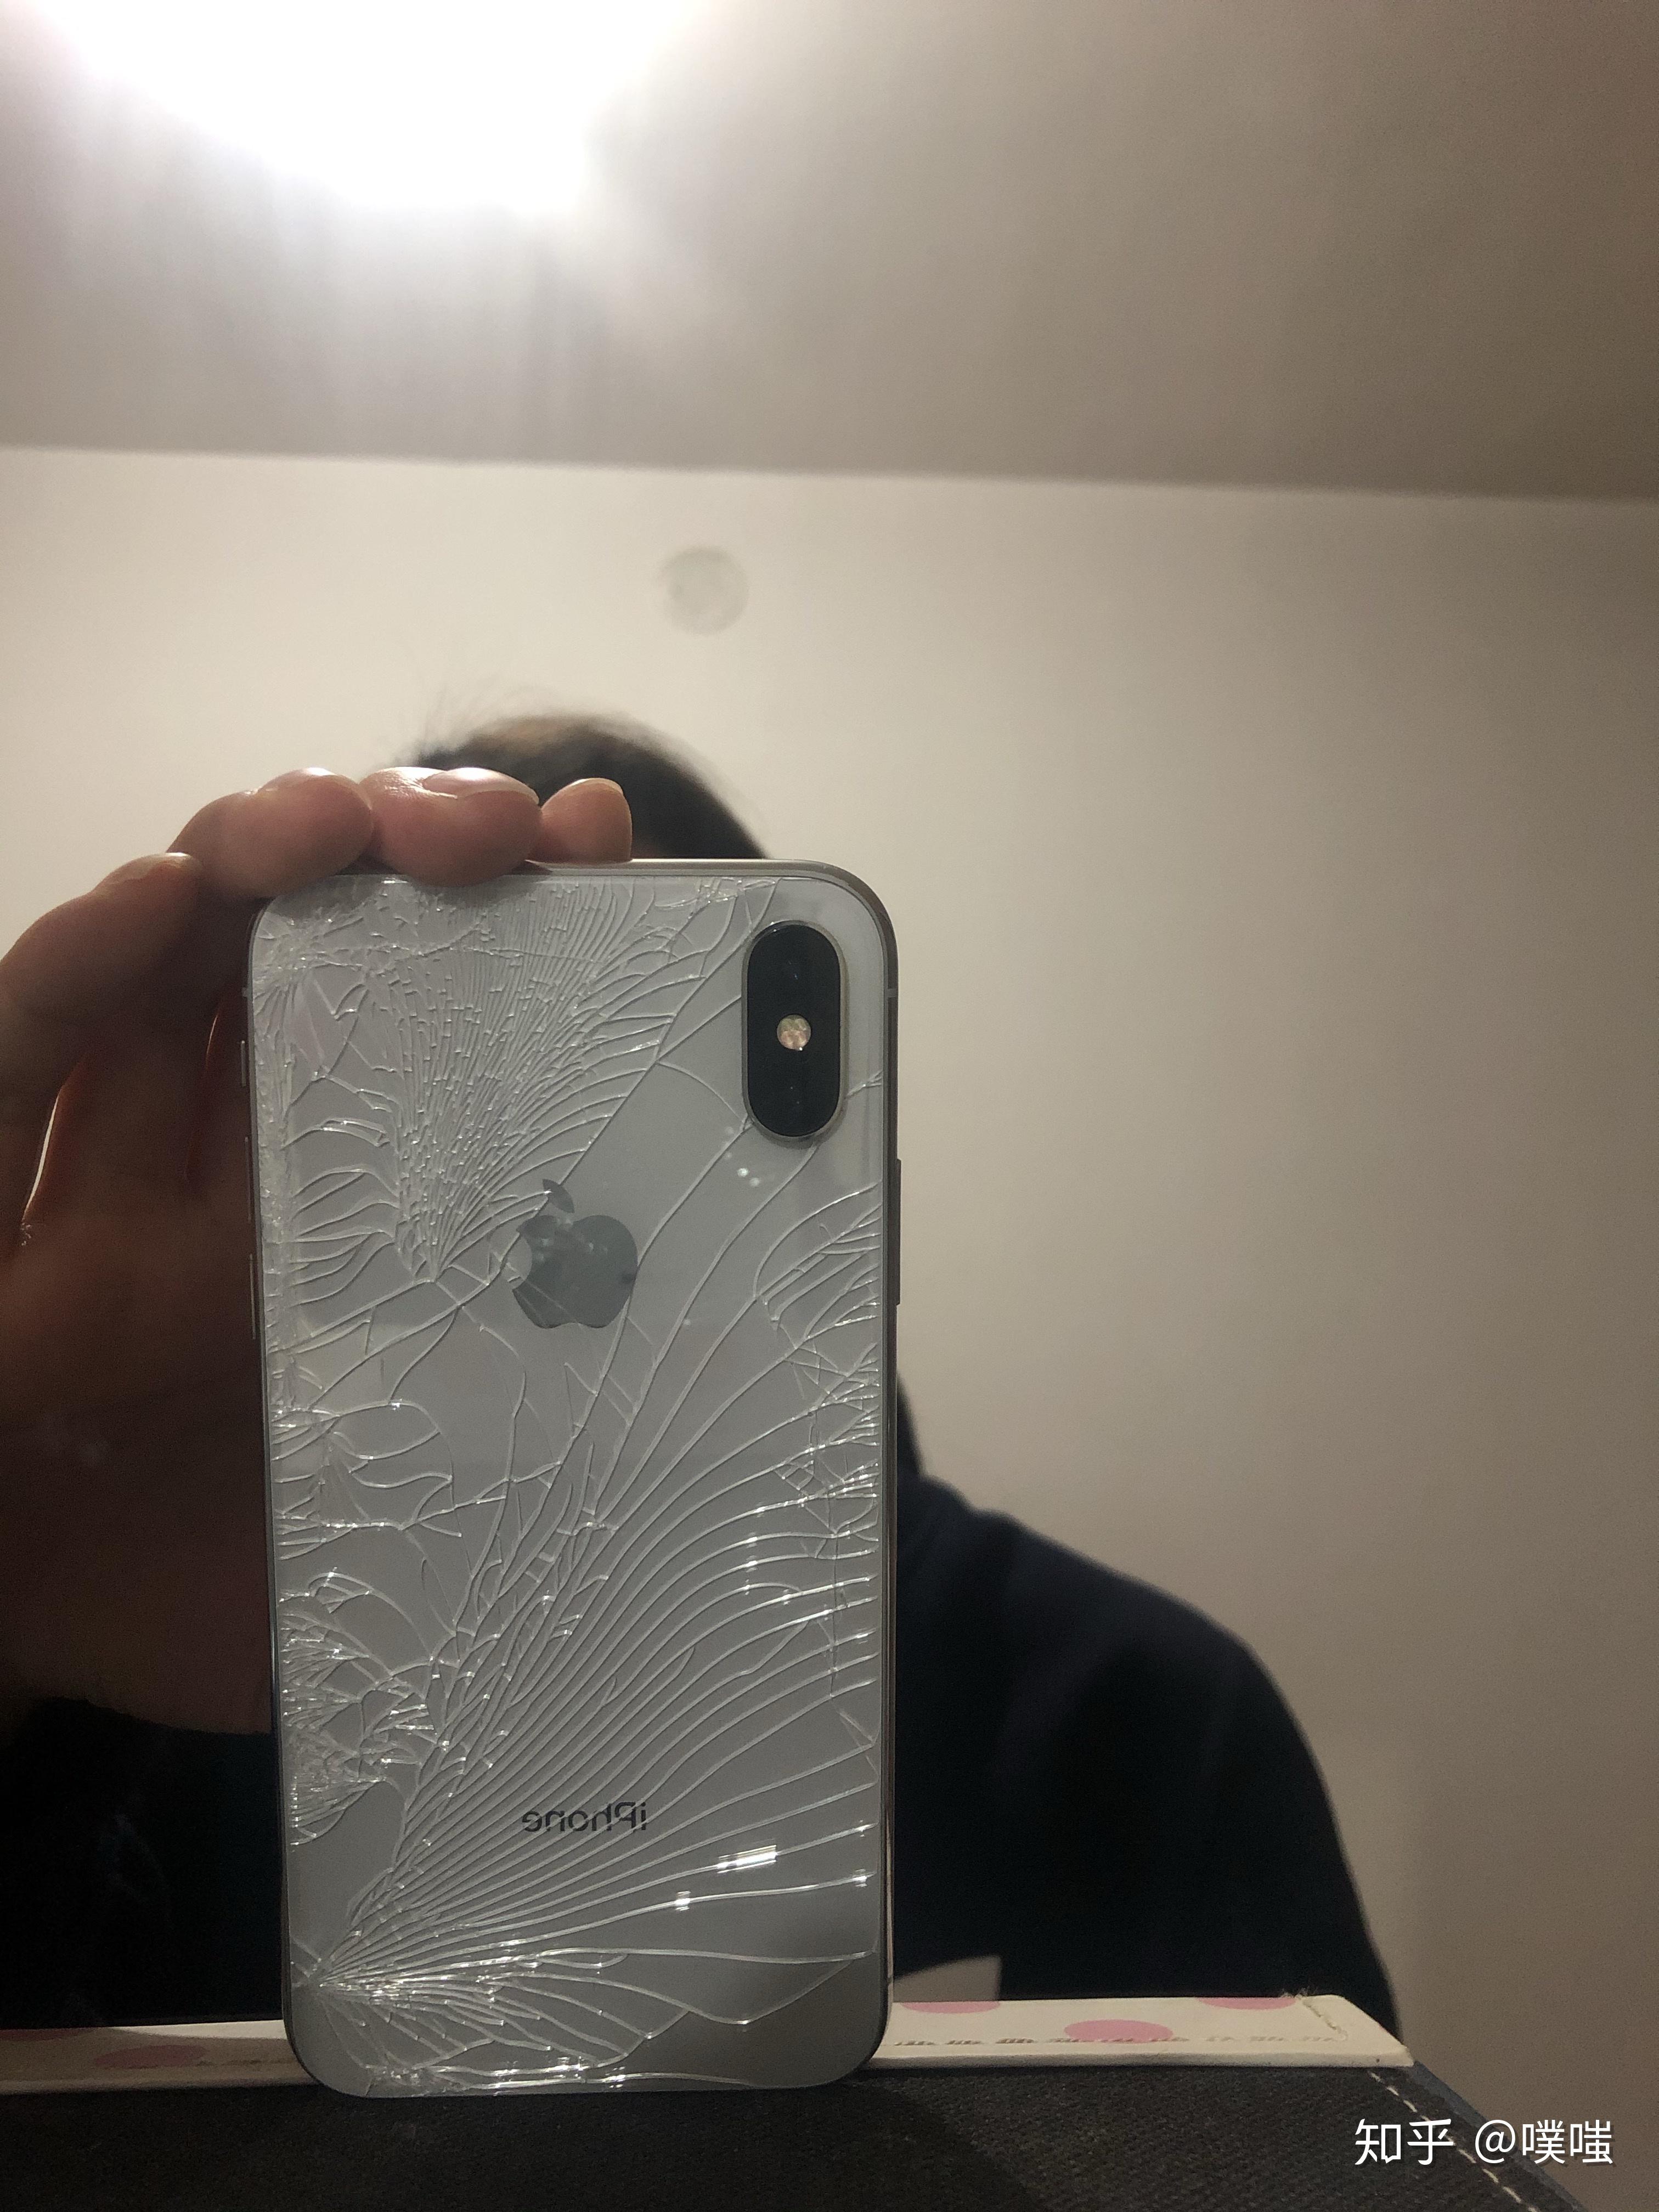 10张最佳iPhone碎屏壁纸